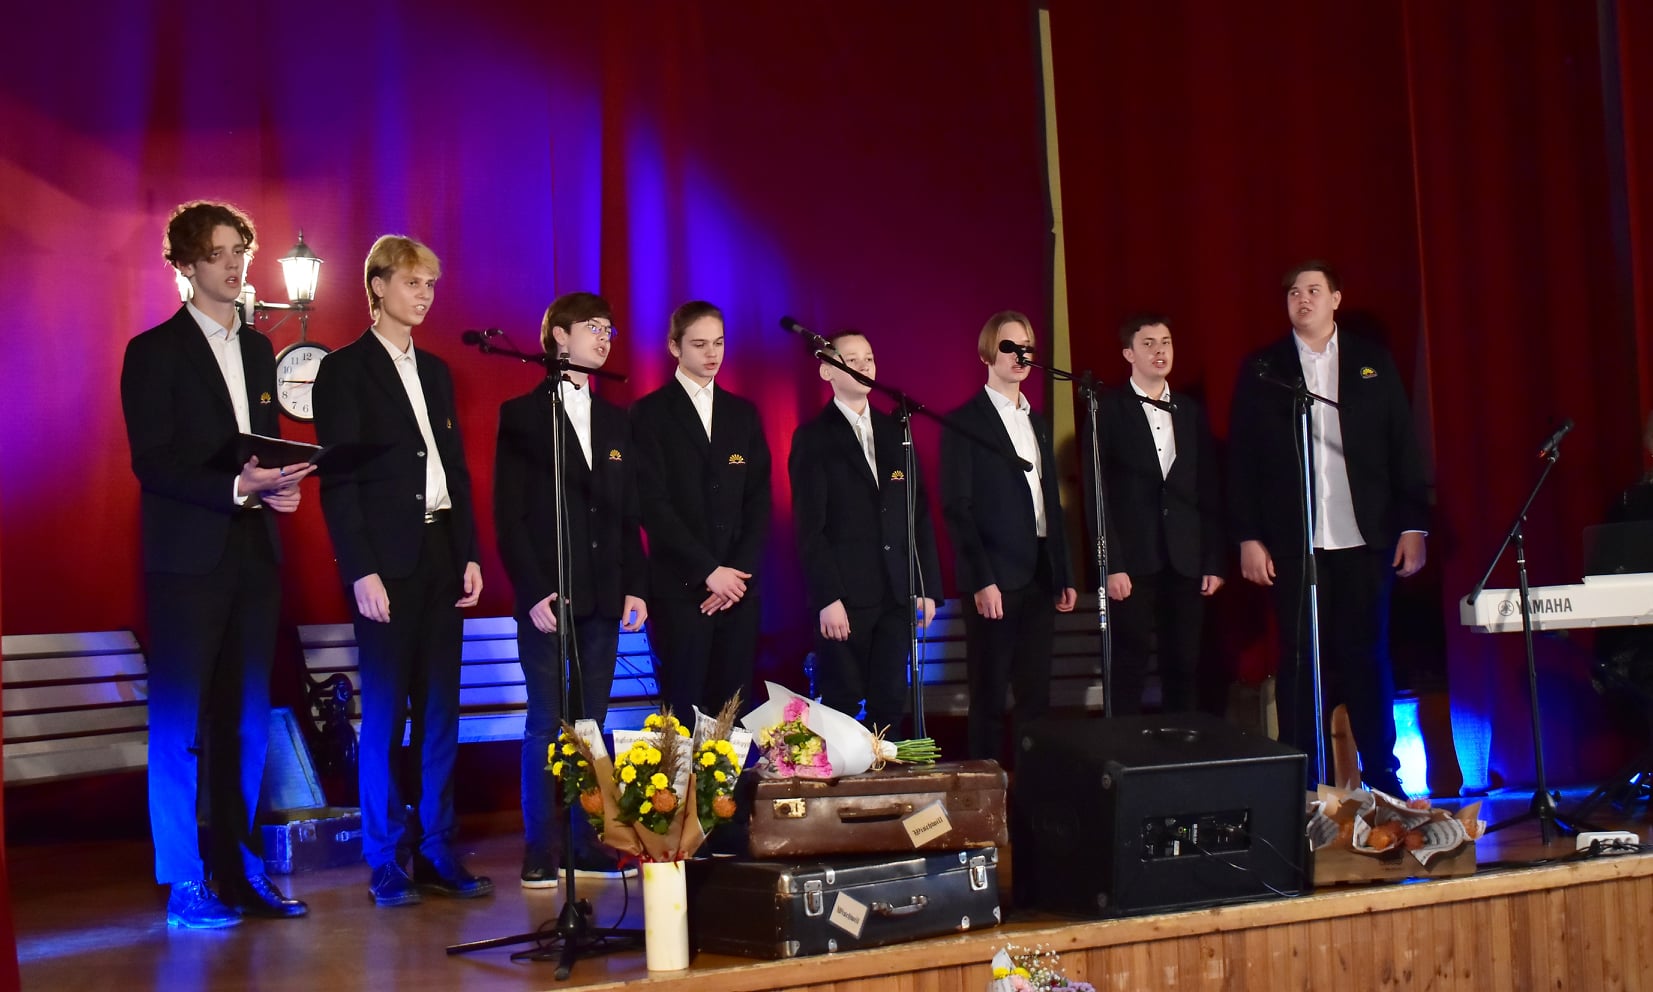 Jurbarko kultūros centro chorai dalyvavo muzikos festivalyje „Vėtrungė-2021“ Viešvilėje